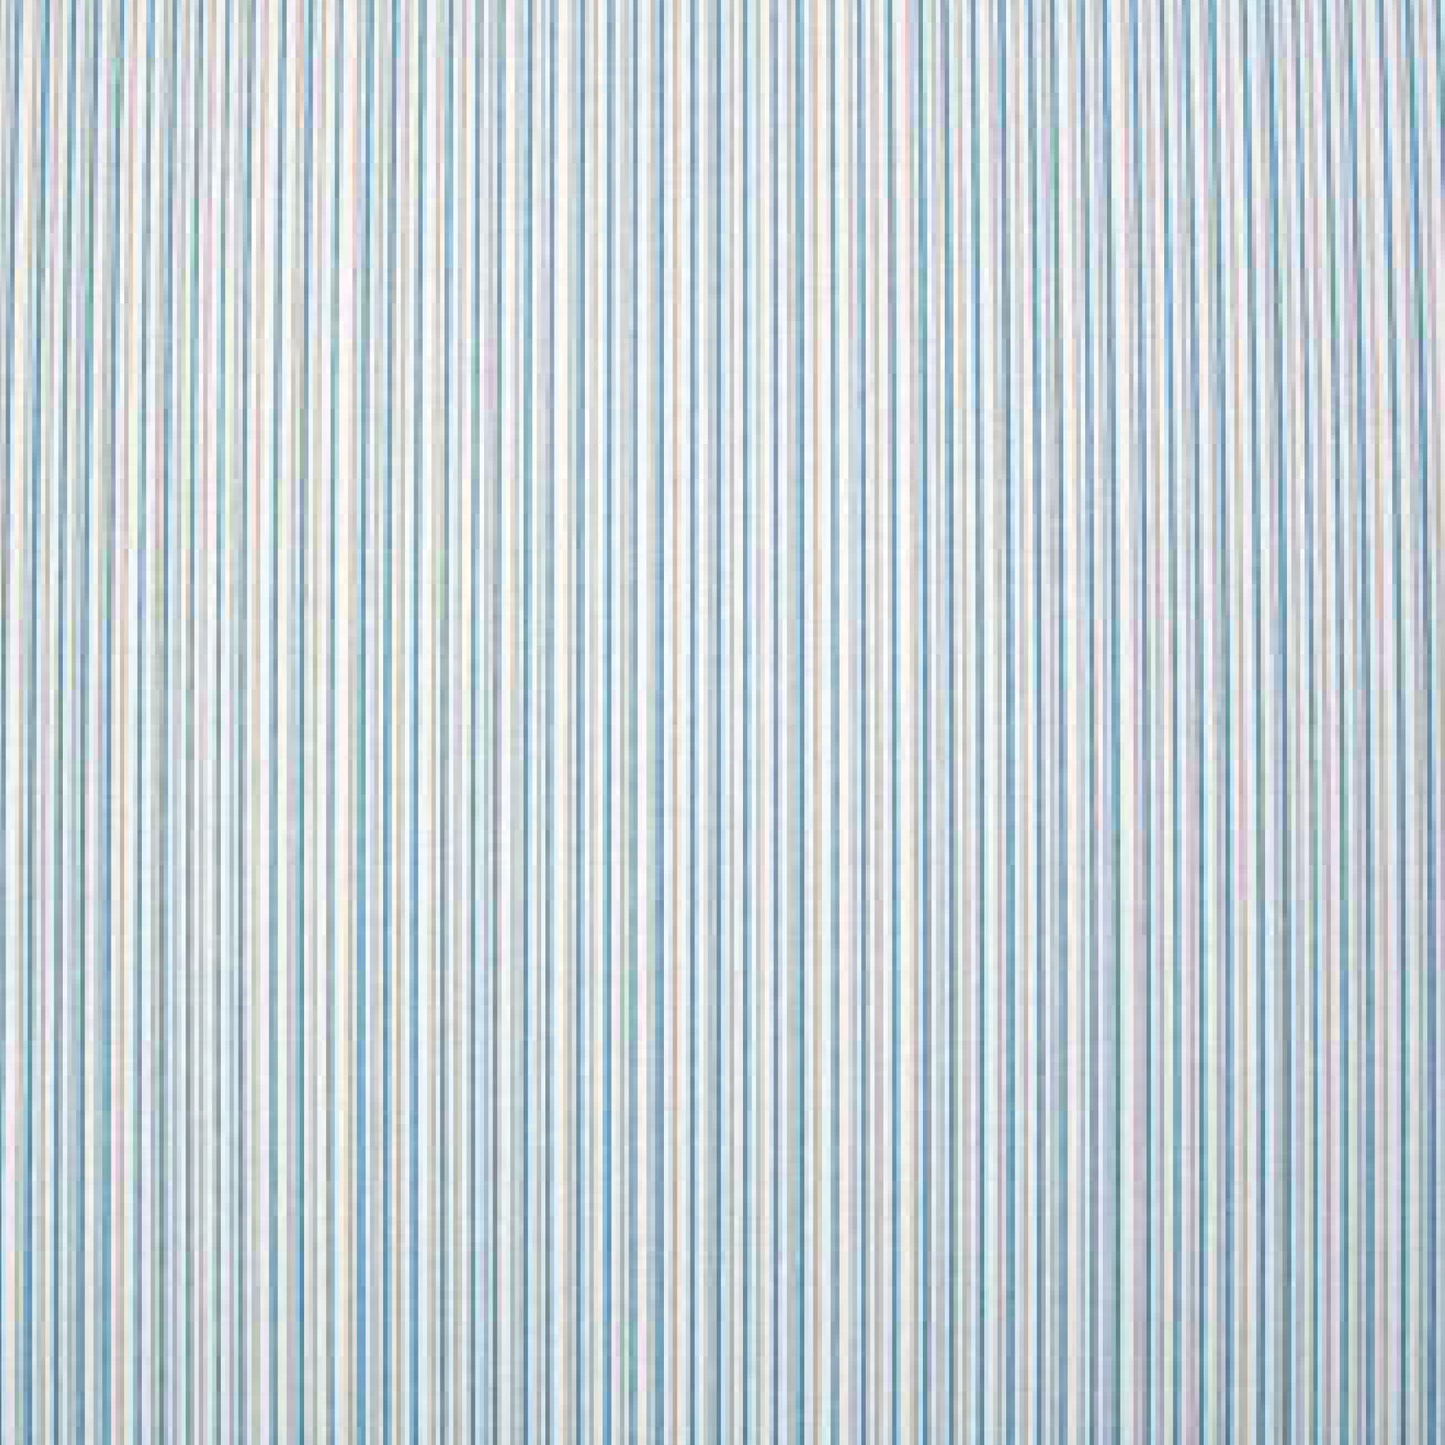 Navy Blue Vertical Striped Wallpaper